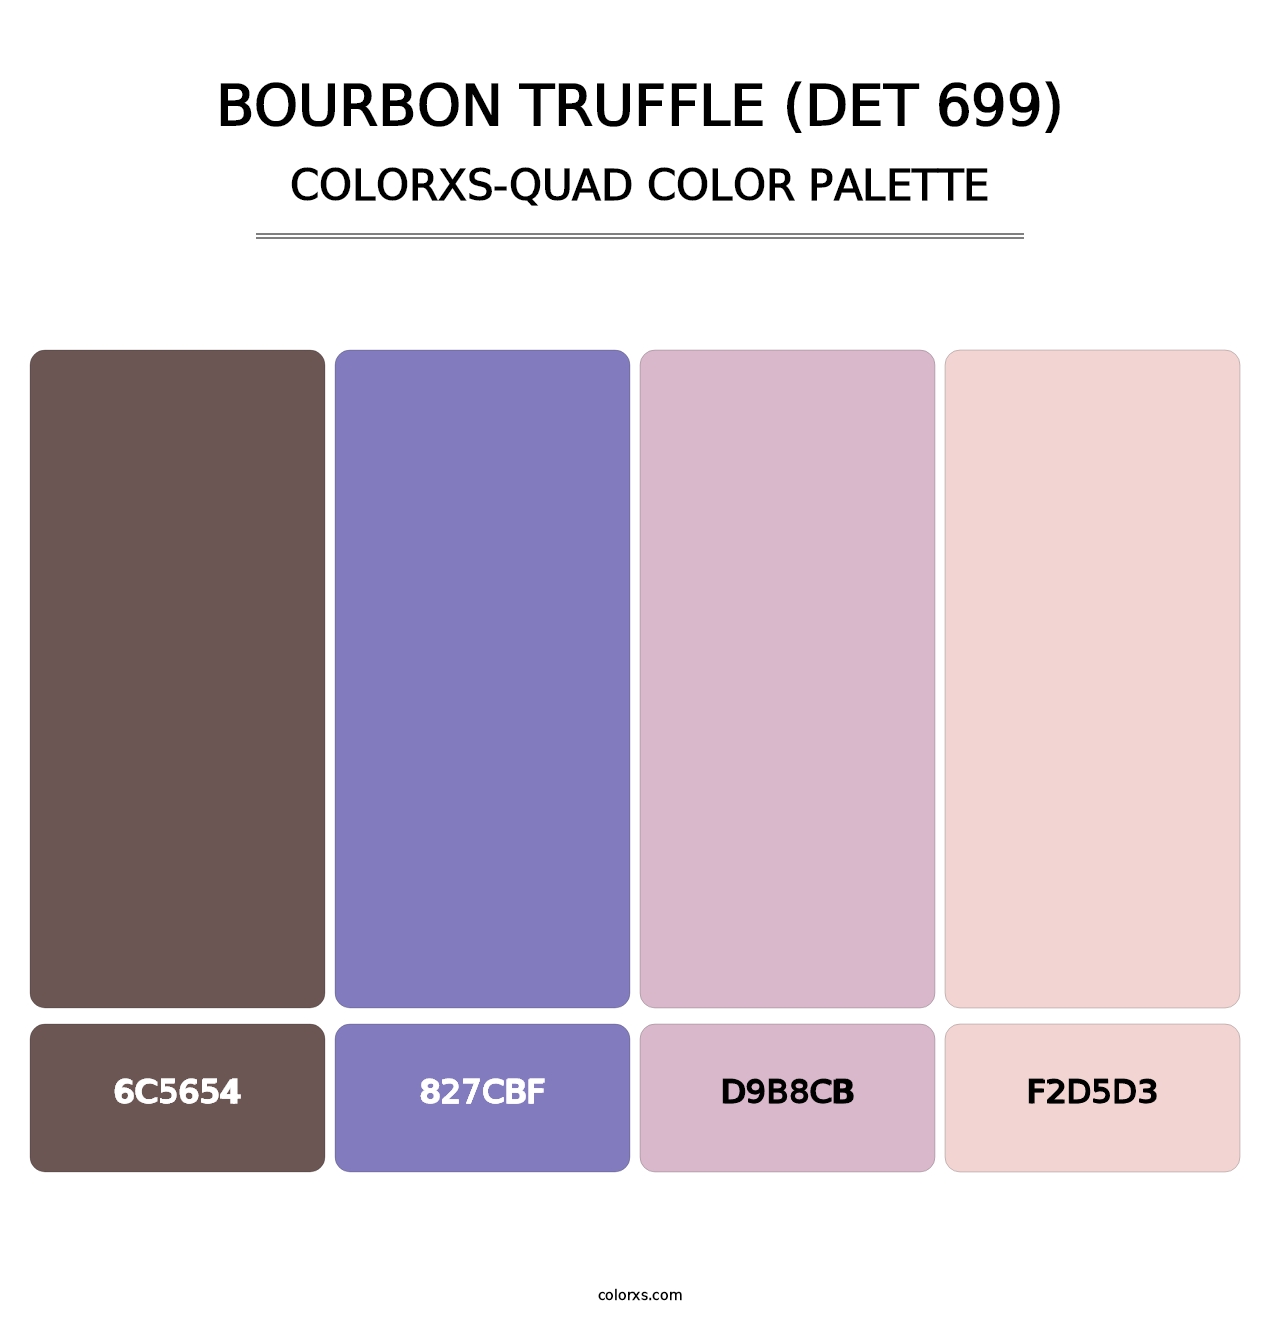 Bourbon Truffle (DET 699) - Colorxs Quad Palette